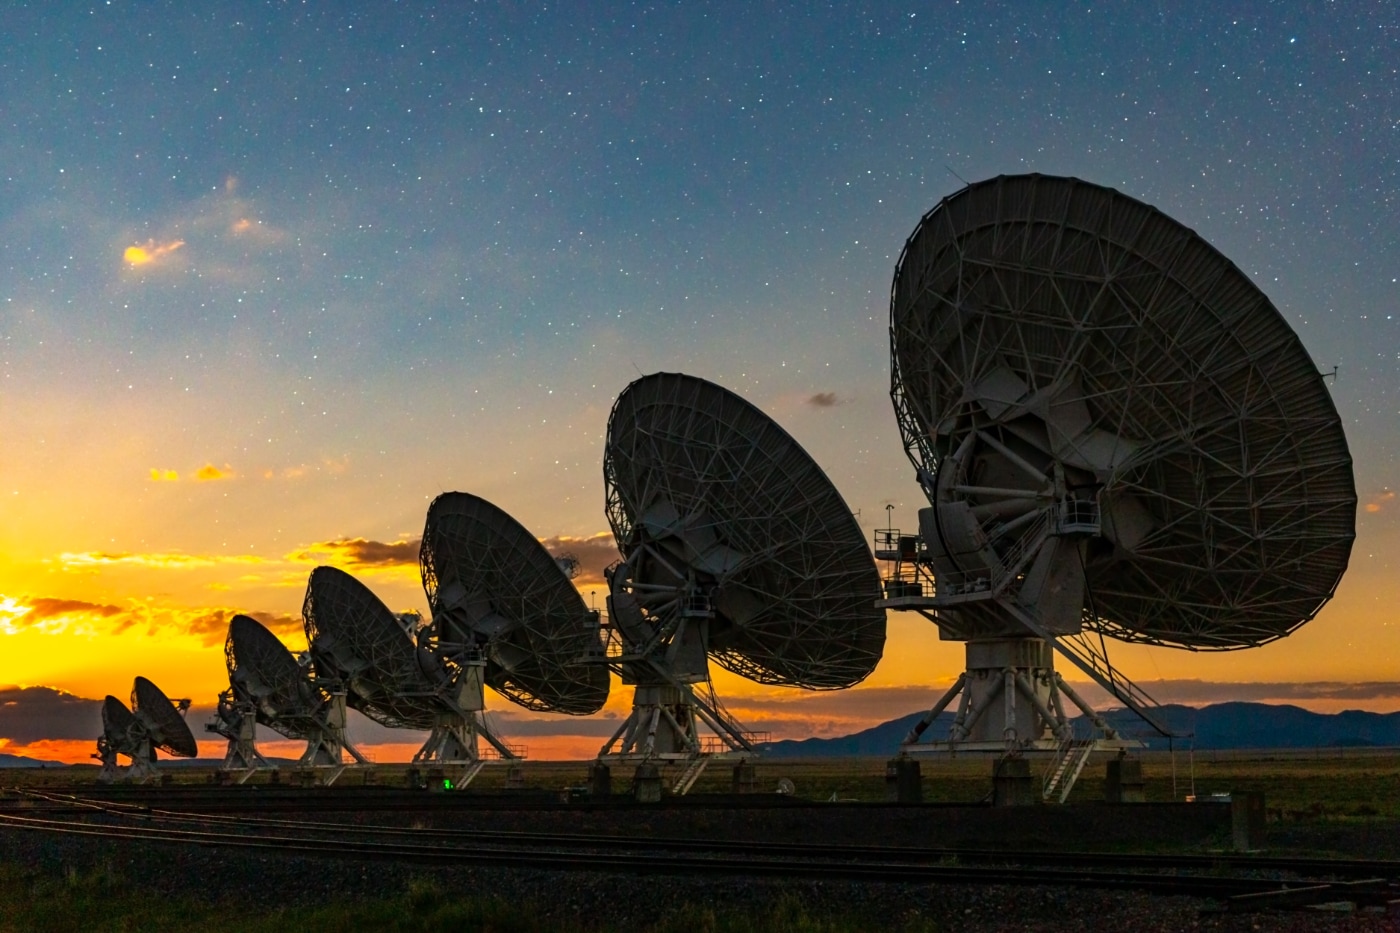 El Conjunto de Muy Grande (VLA), instalación formada por 27 antenas de radio de 230 toneladas cada una levantadas en el desierto de Nuevo México, Estados Unidos. Foto: Bettymaya Foott, NRAO/AUI/NSF.